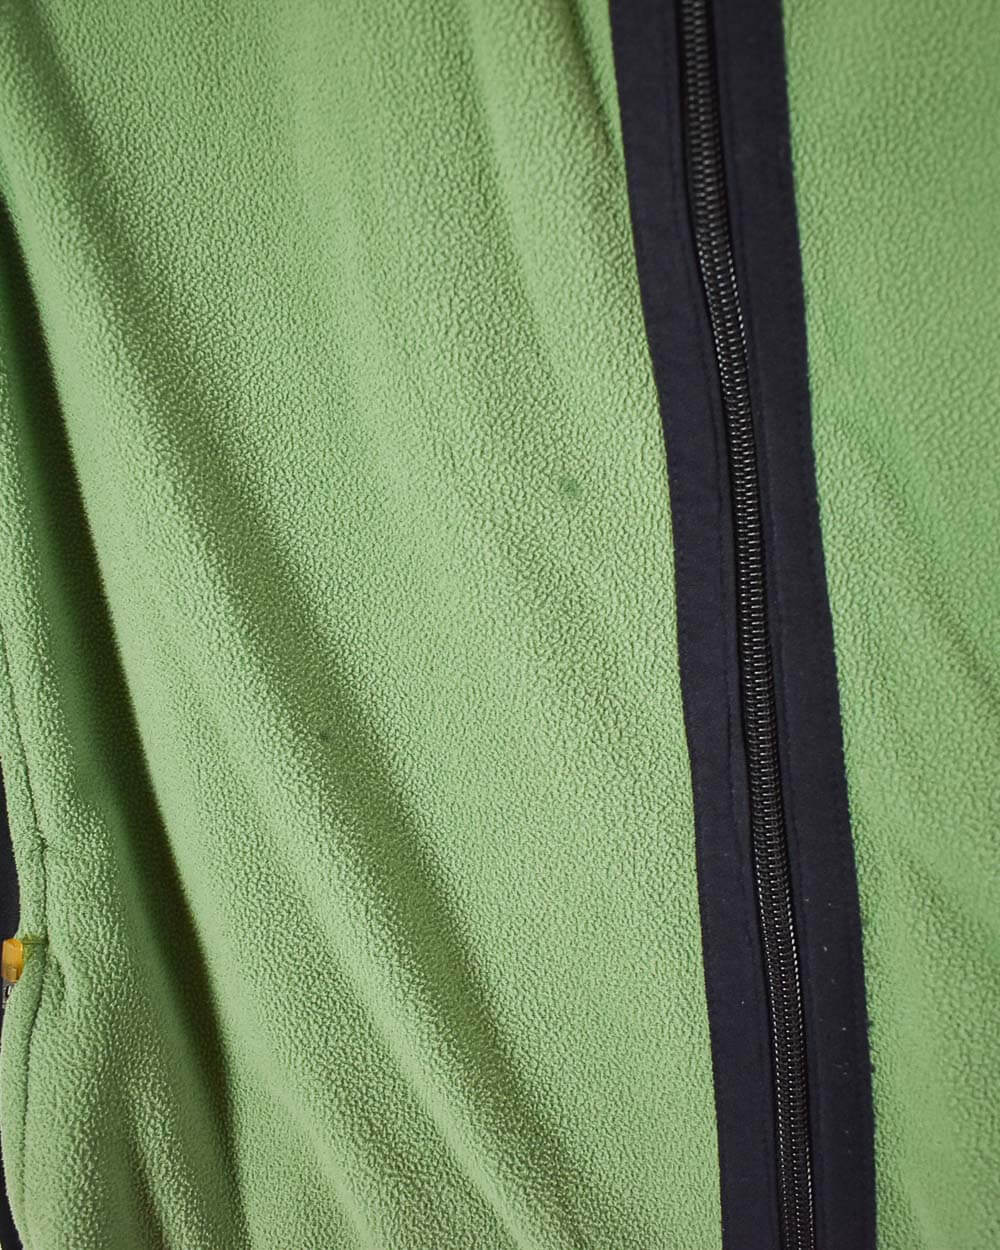 Green Nike Fleece Bodywarmer - Medium